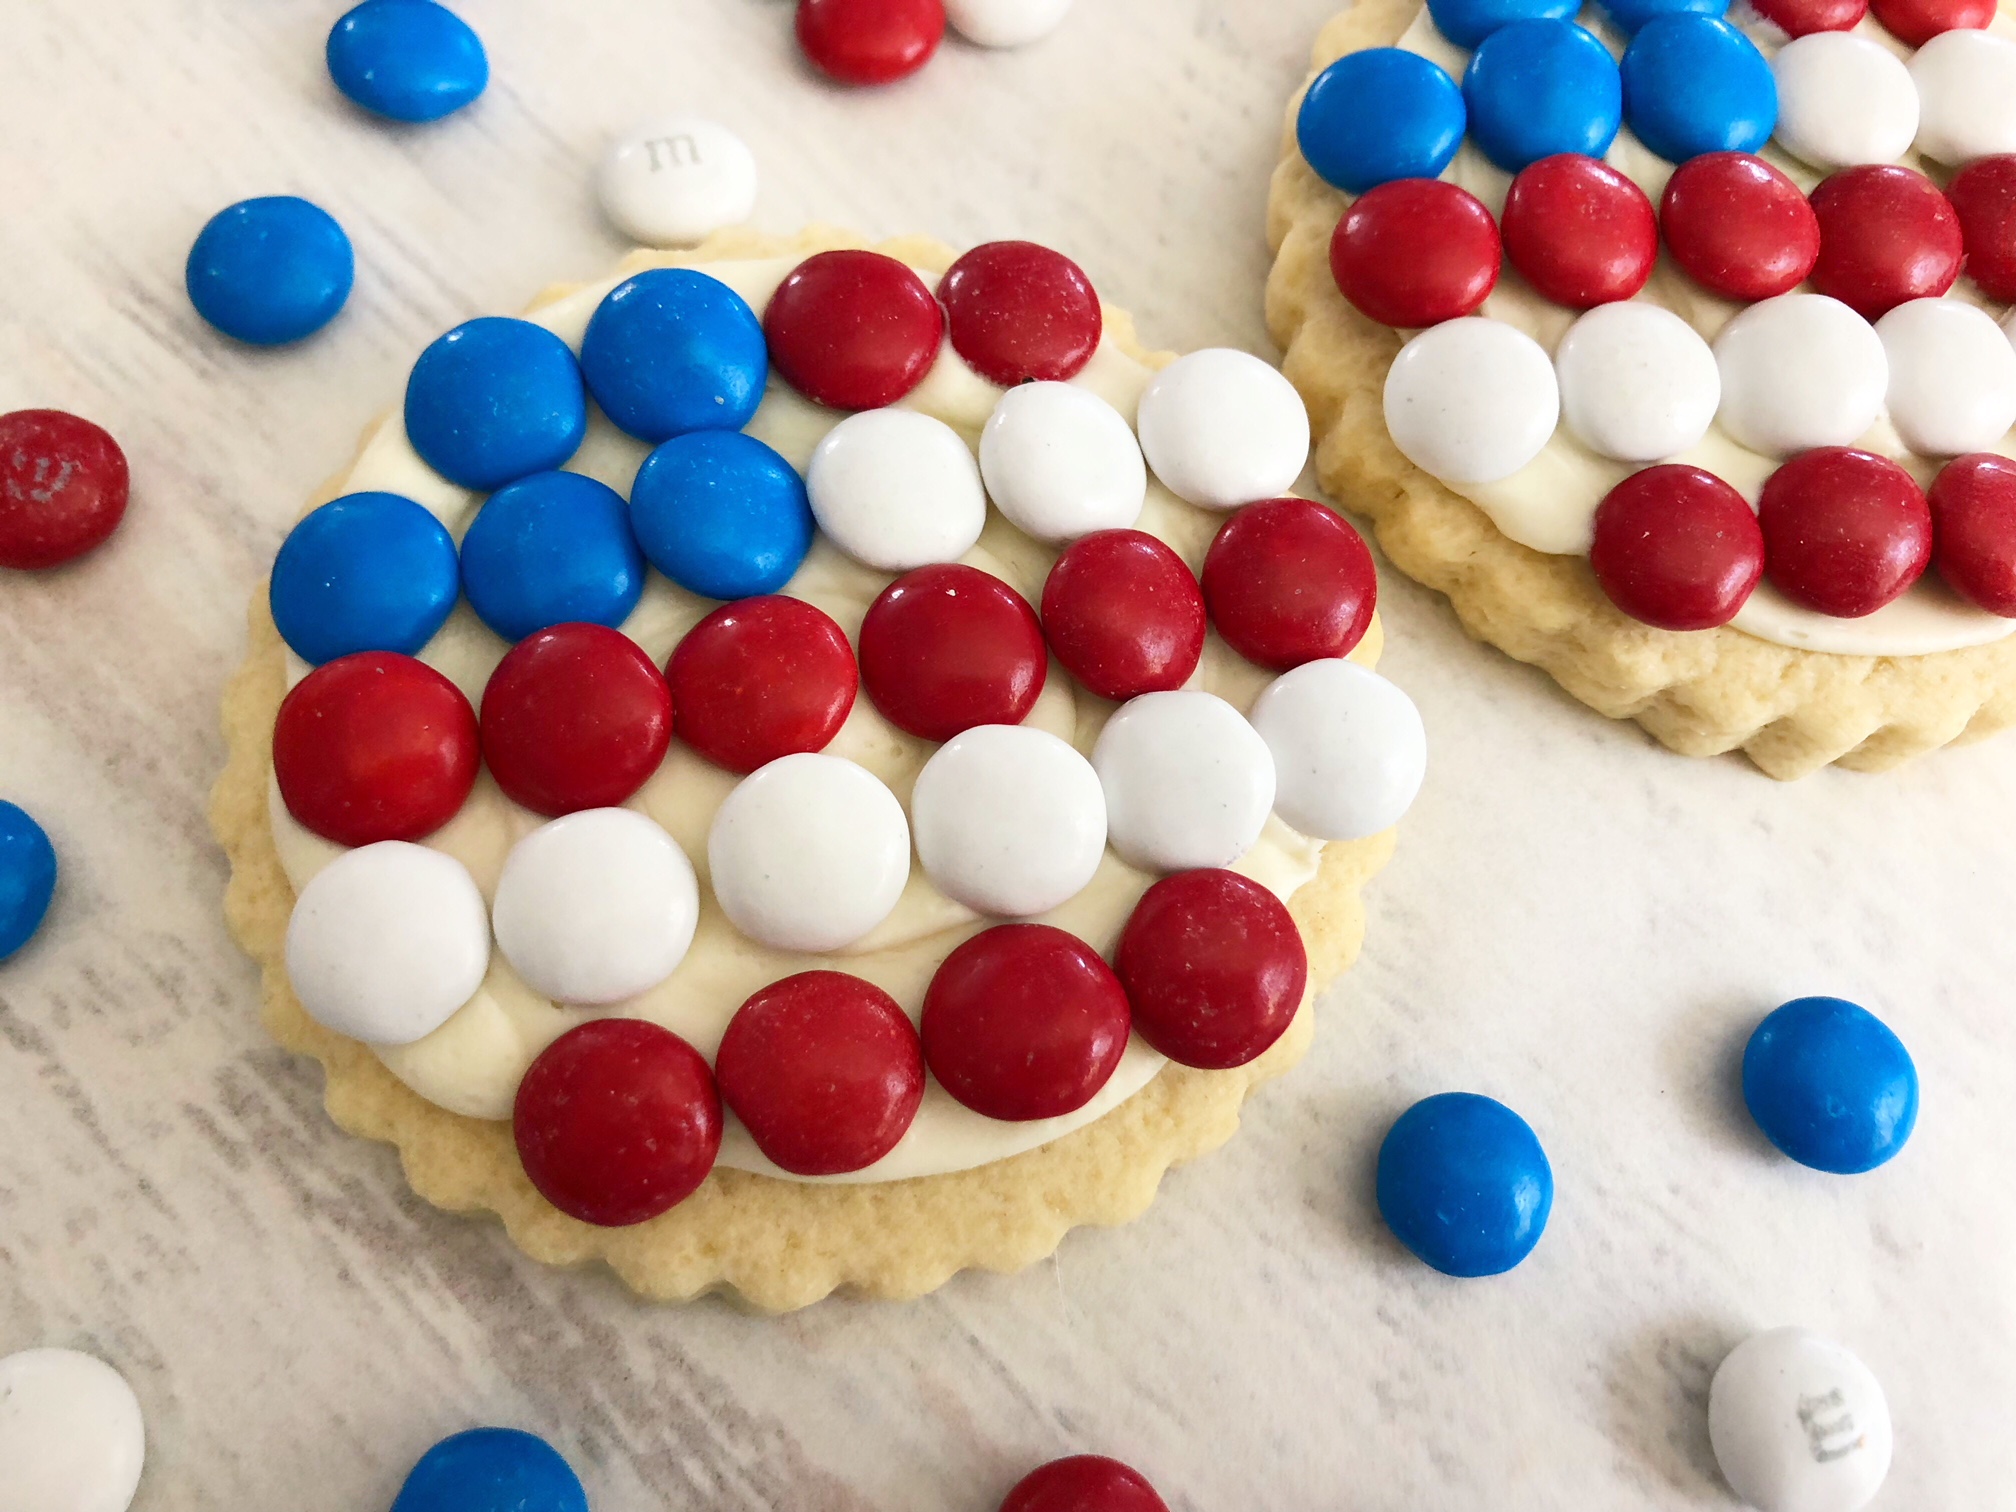 American Flag Sugar Cookies